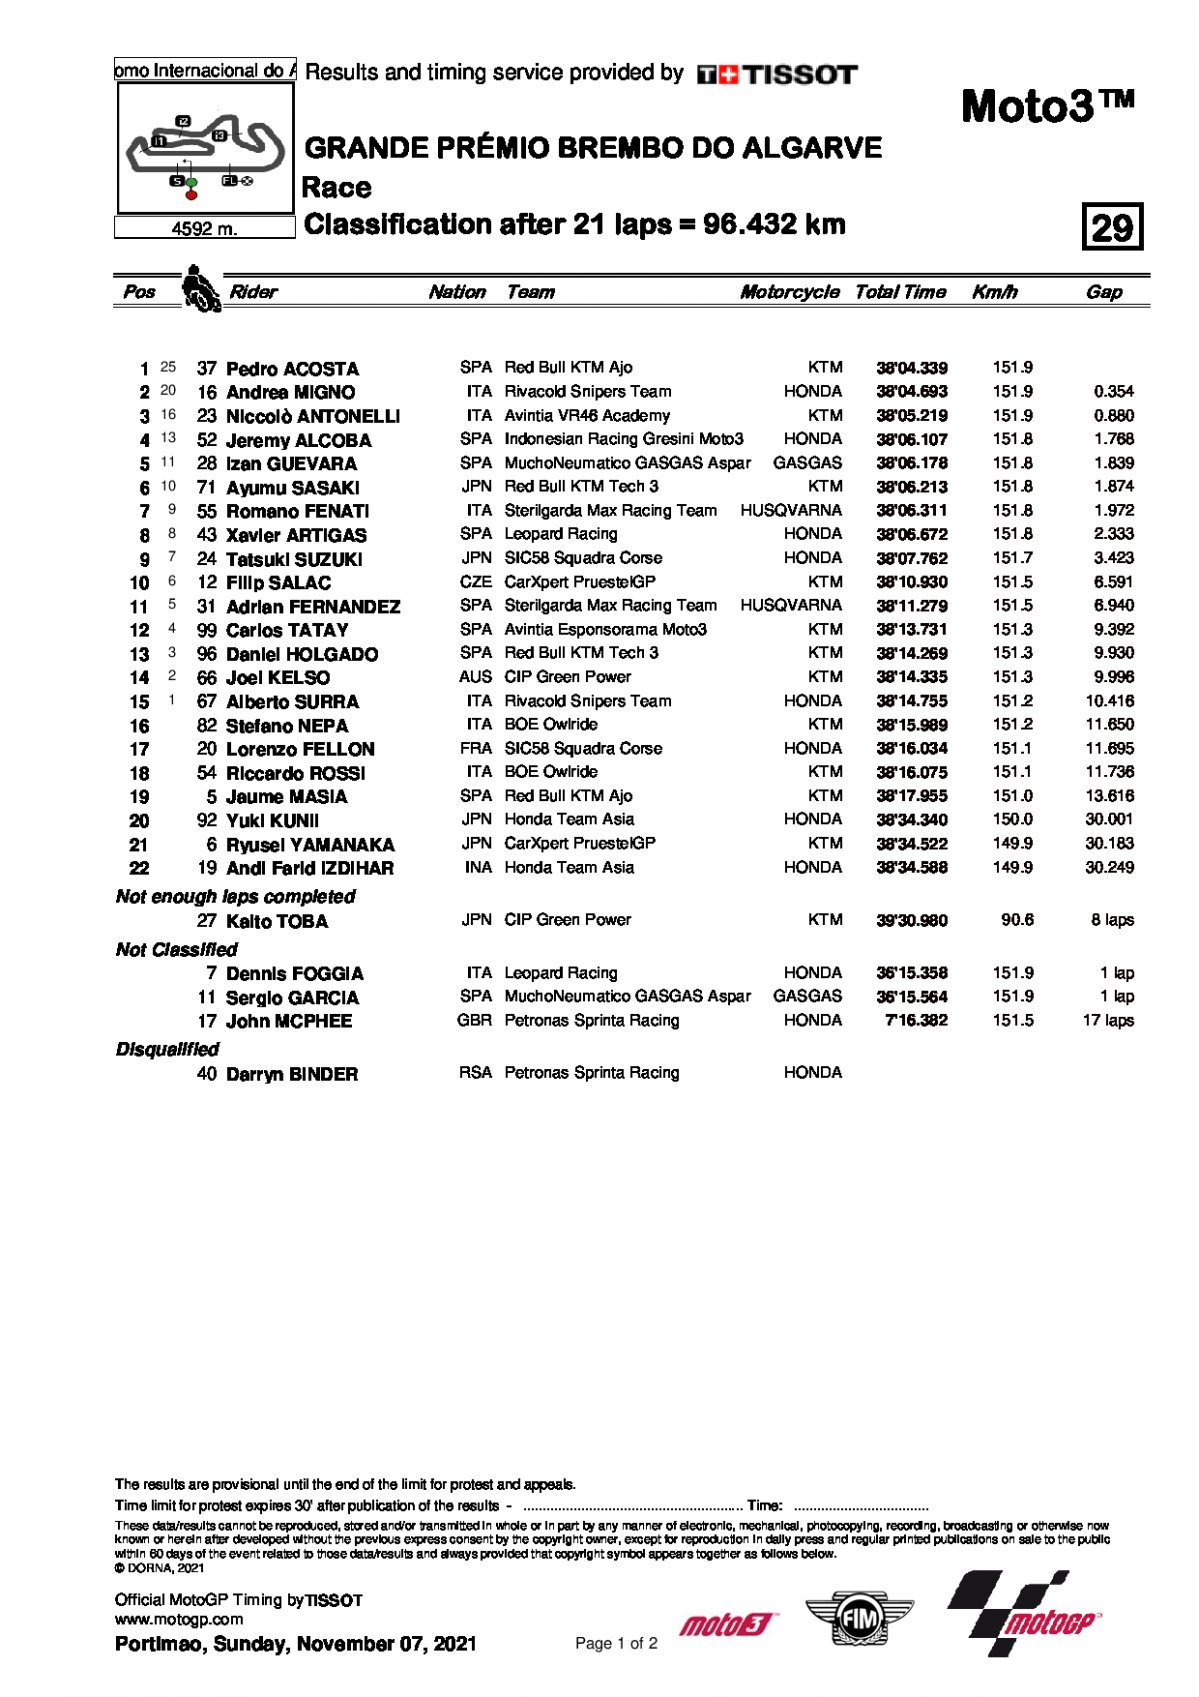 Результаты Гран-При Альгарве, Moto3 (7/11/2021)